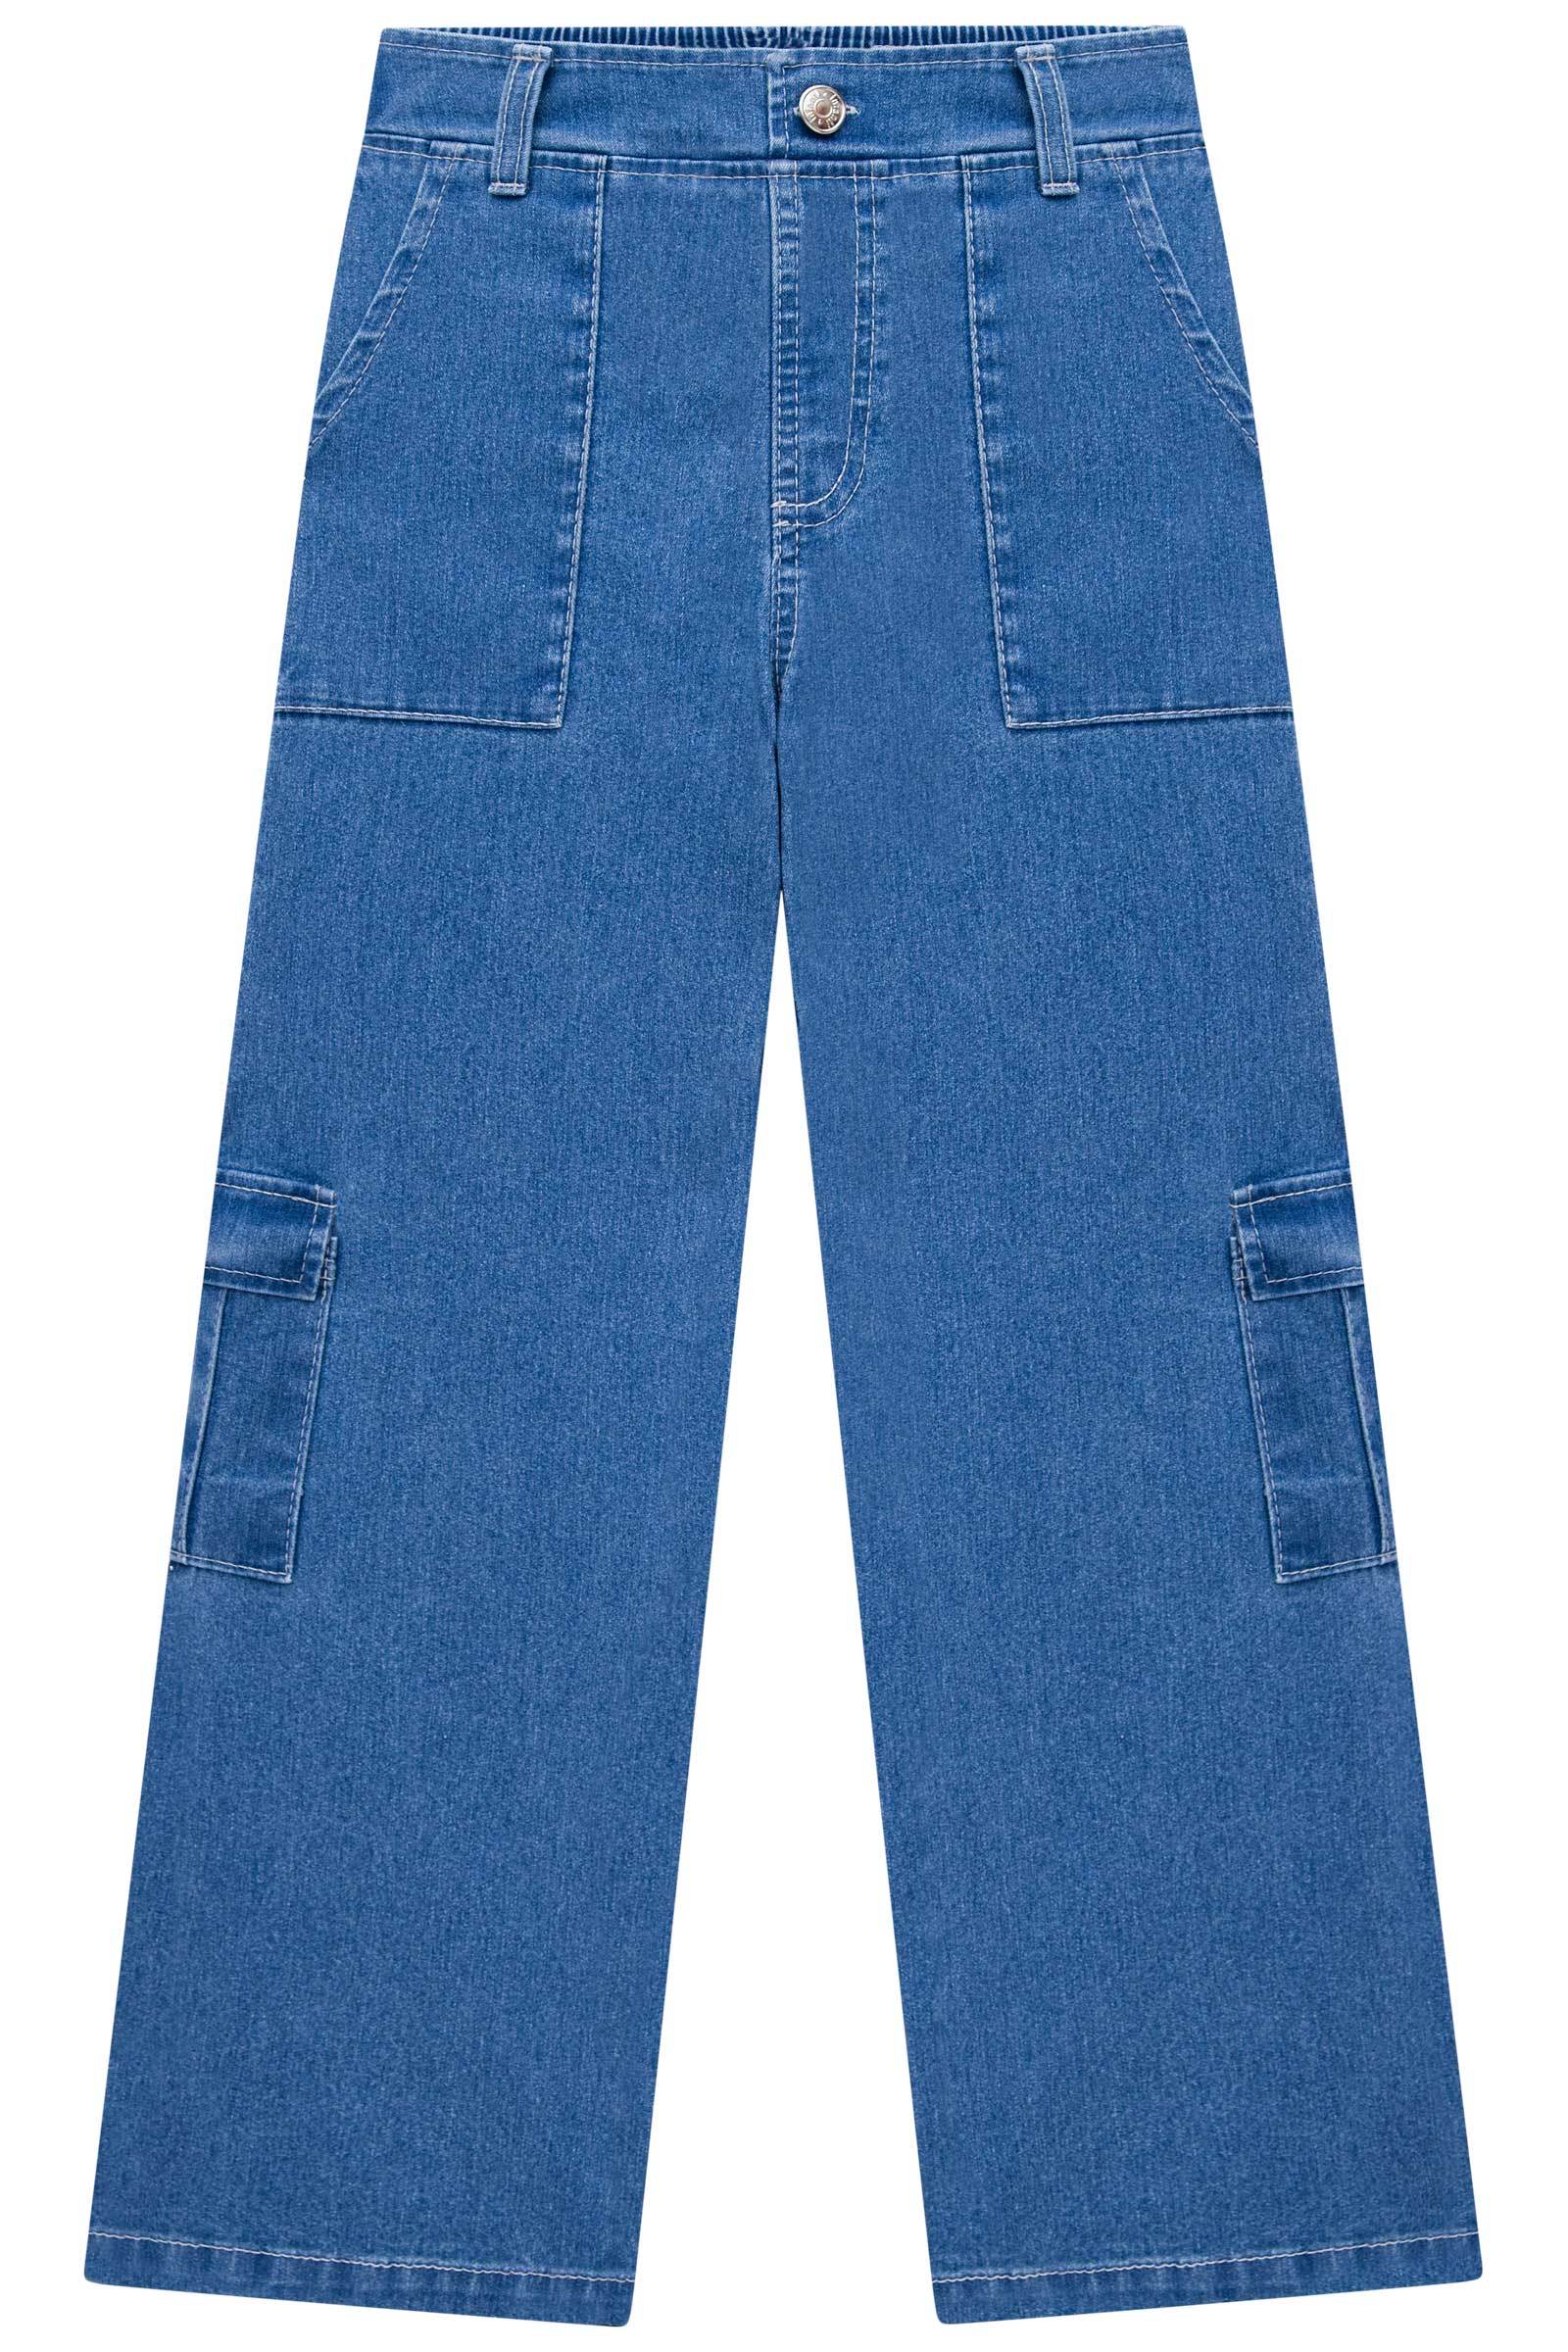 Calça Cargo em Jeans Bellini com Elastano 74025 Infanti